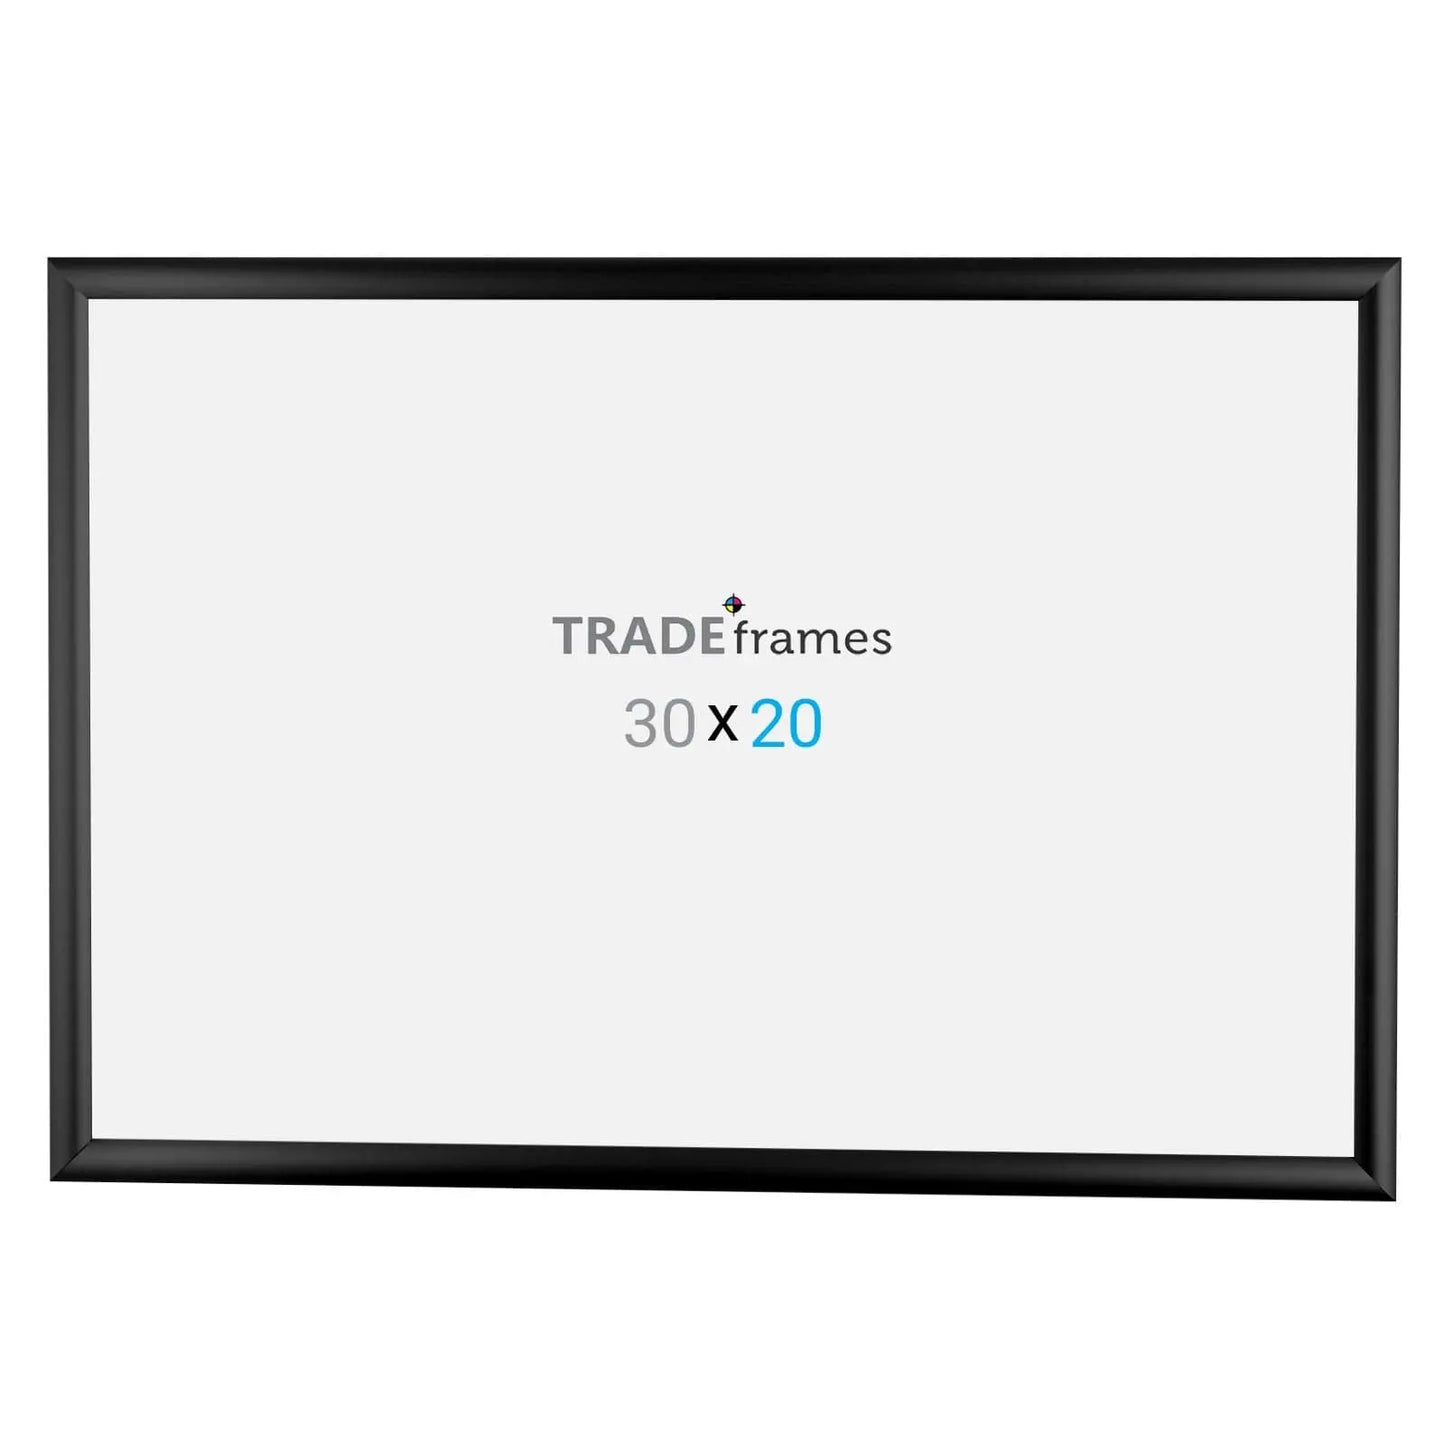 20x30 Black Snap Frame - 1" Profile - Snap Frames Direct